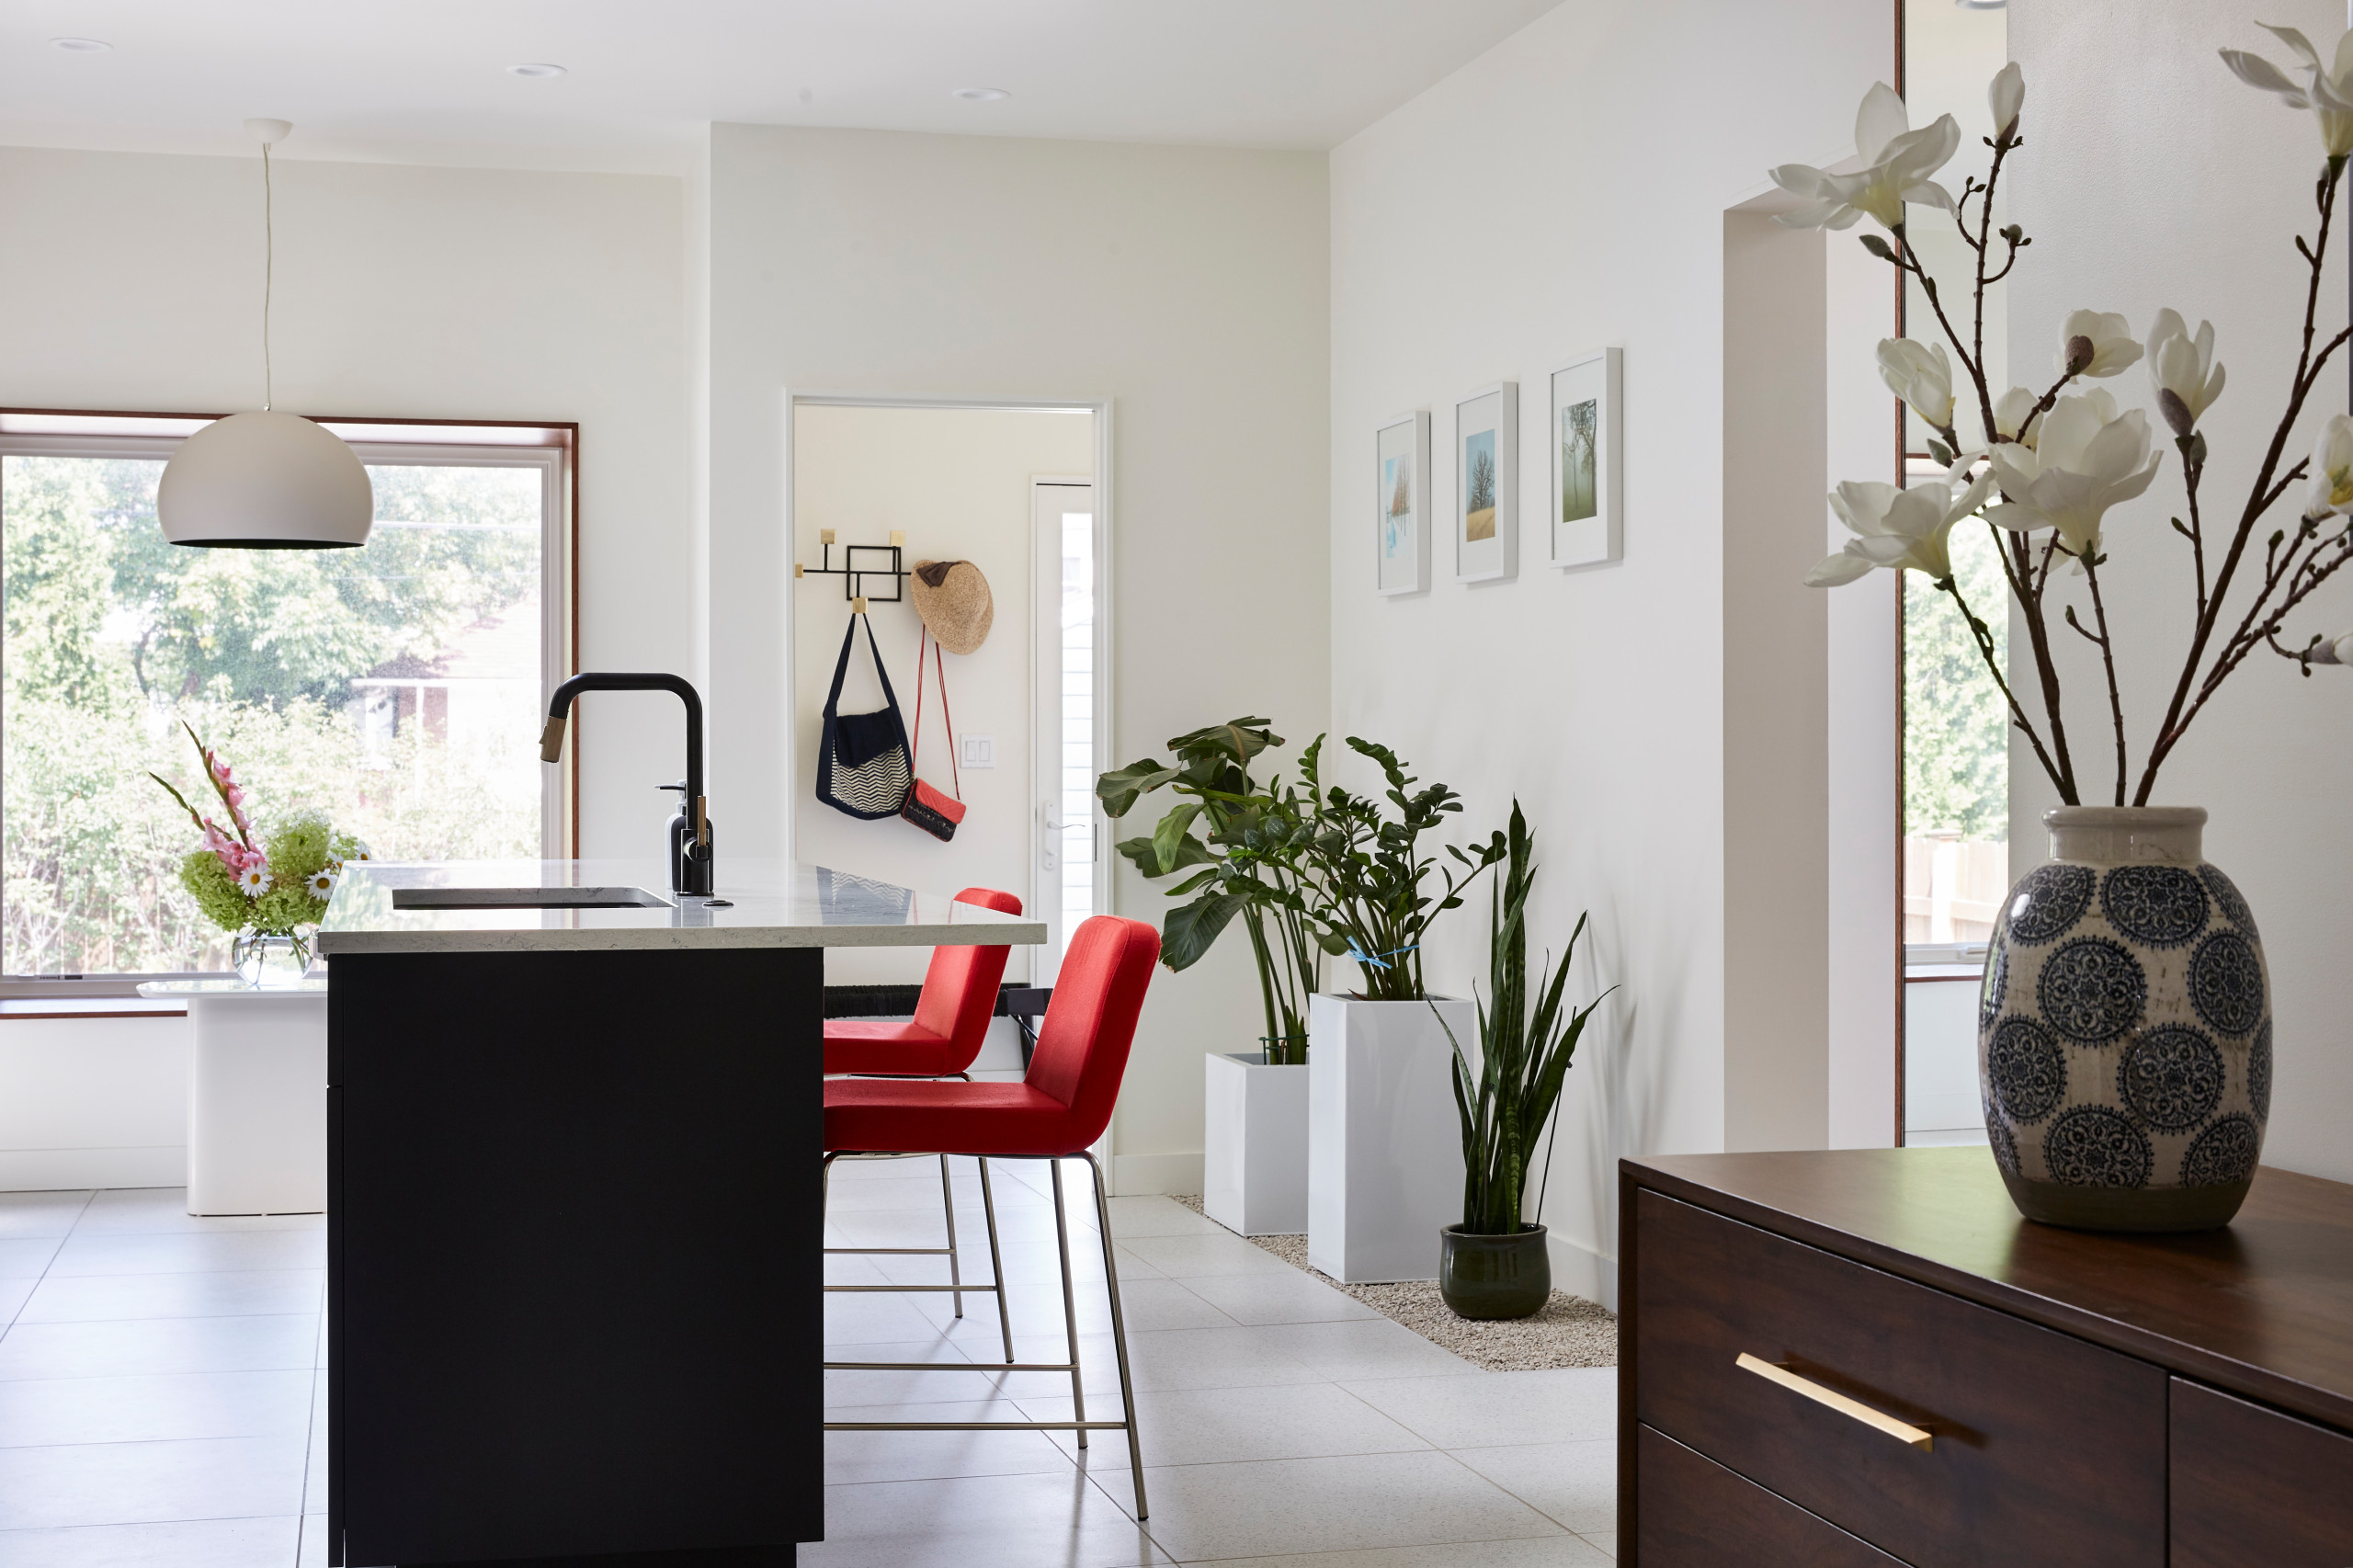 Fairmount Contemporary Home Addition